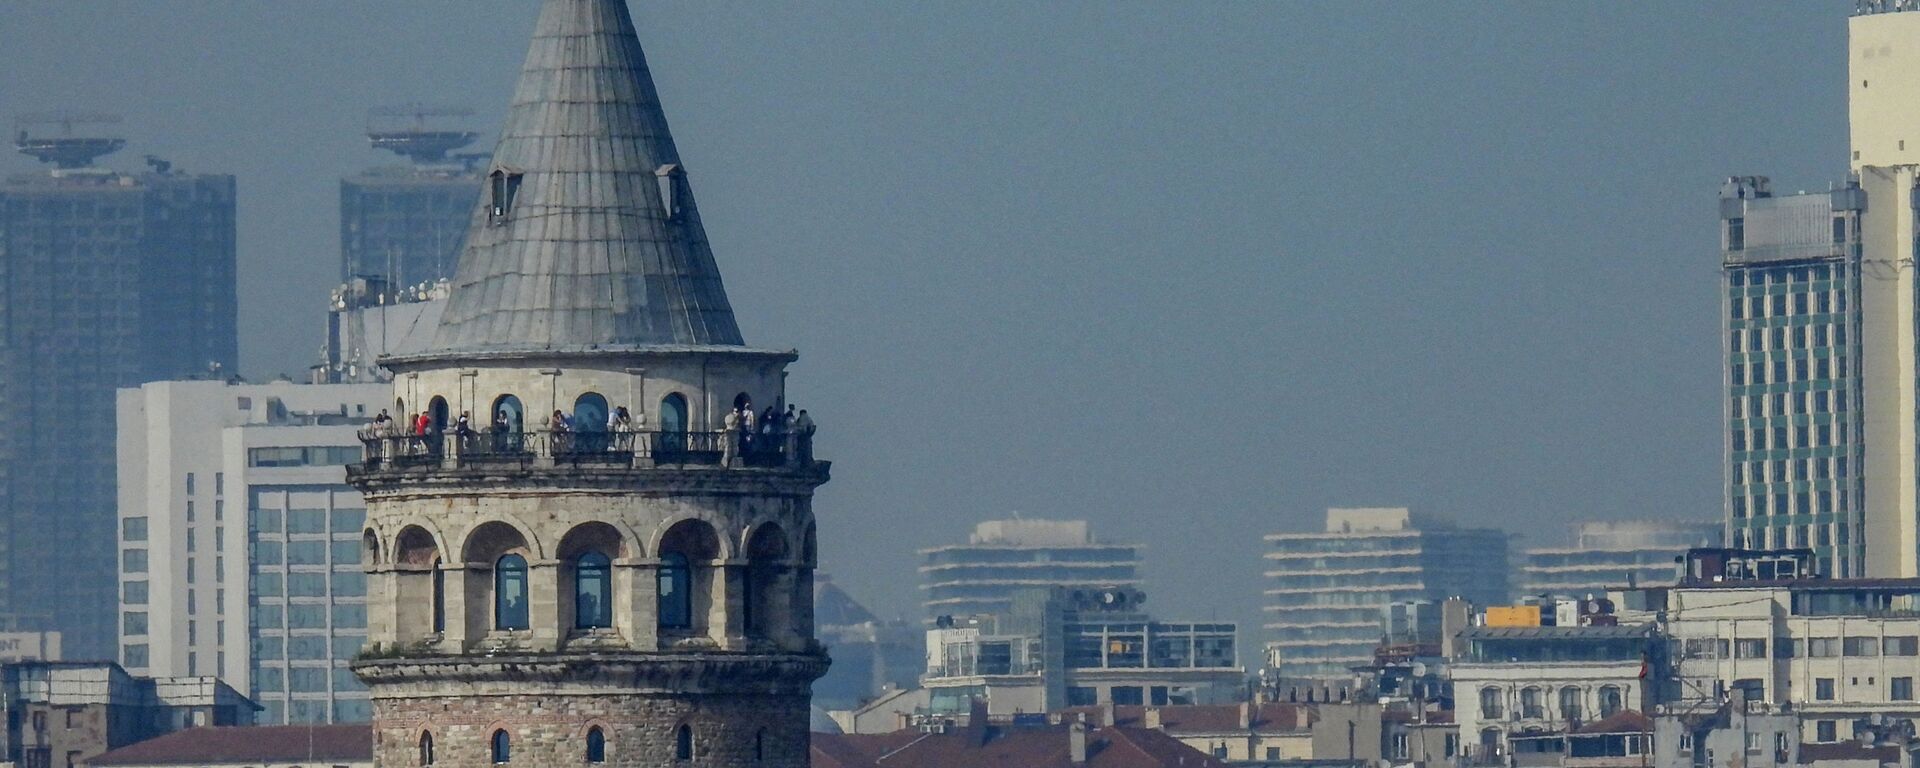 Galata Kulesi-İstanbul manzara - Sputnik Türkiye, 1920, 17.08.2021